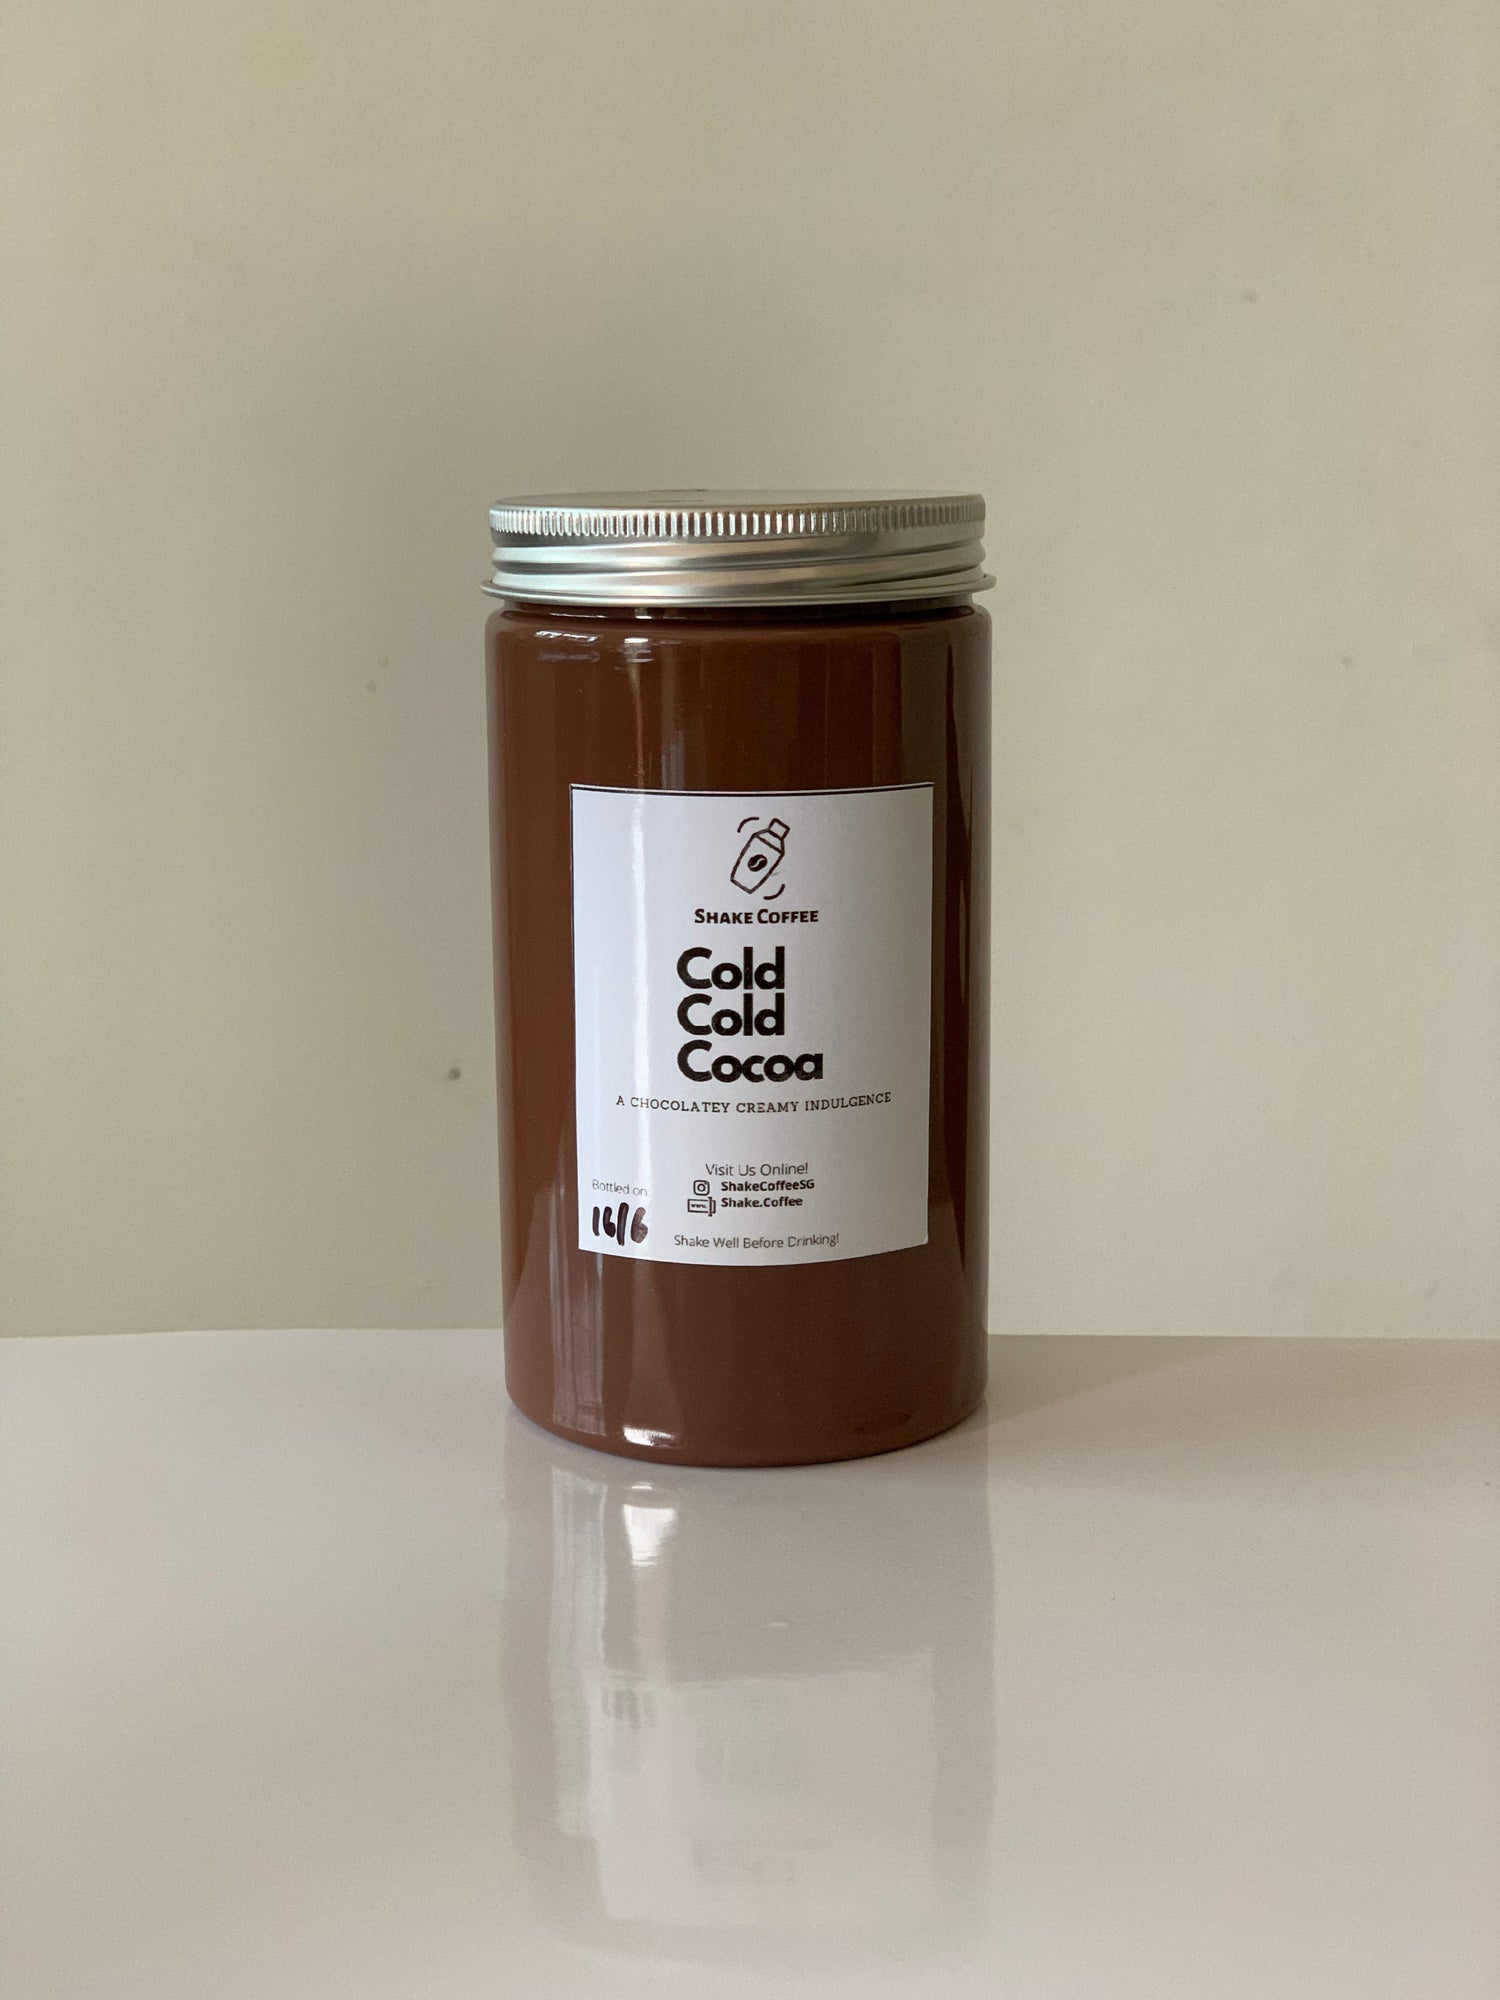 Cold Cold Cocoa (400ml) - Shake Coffee SG